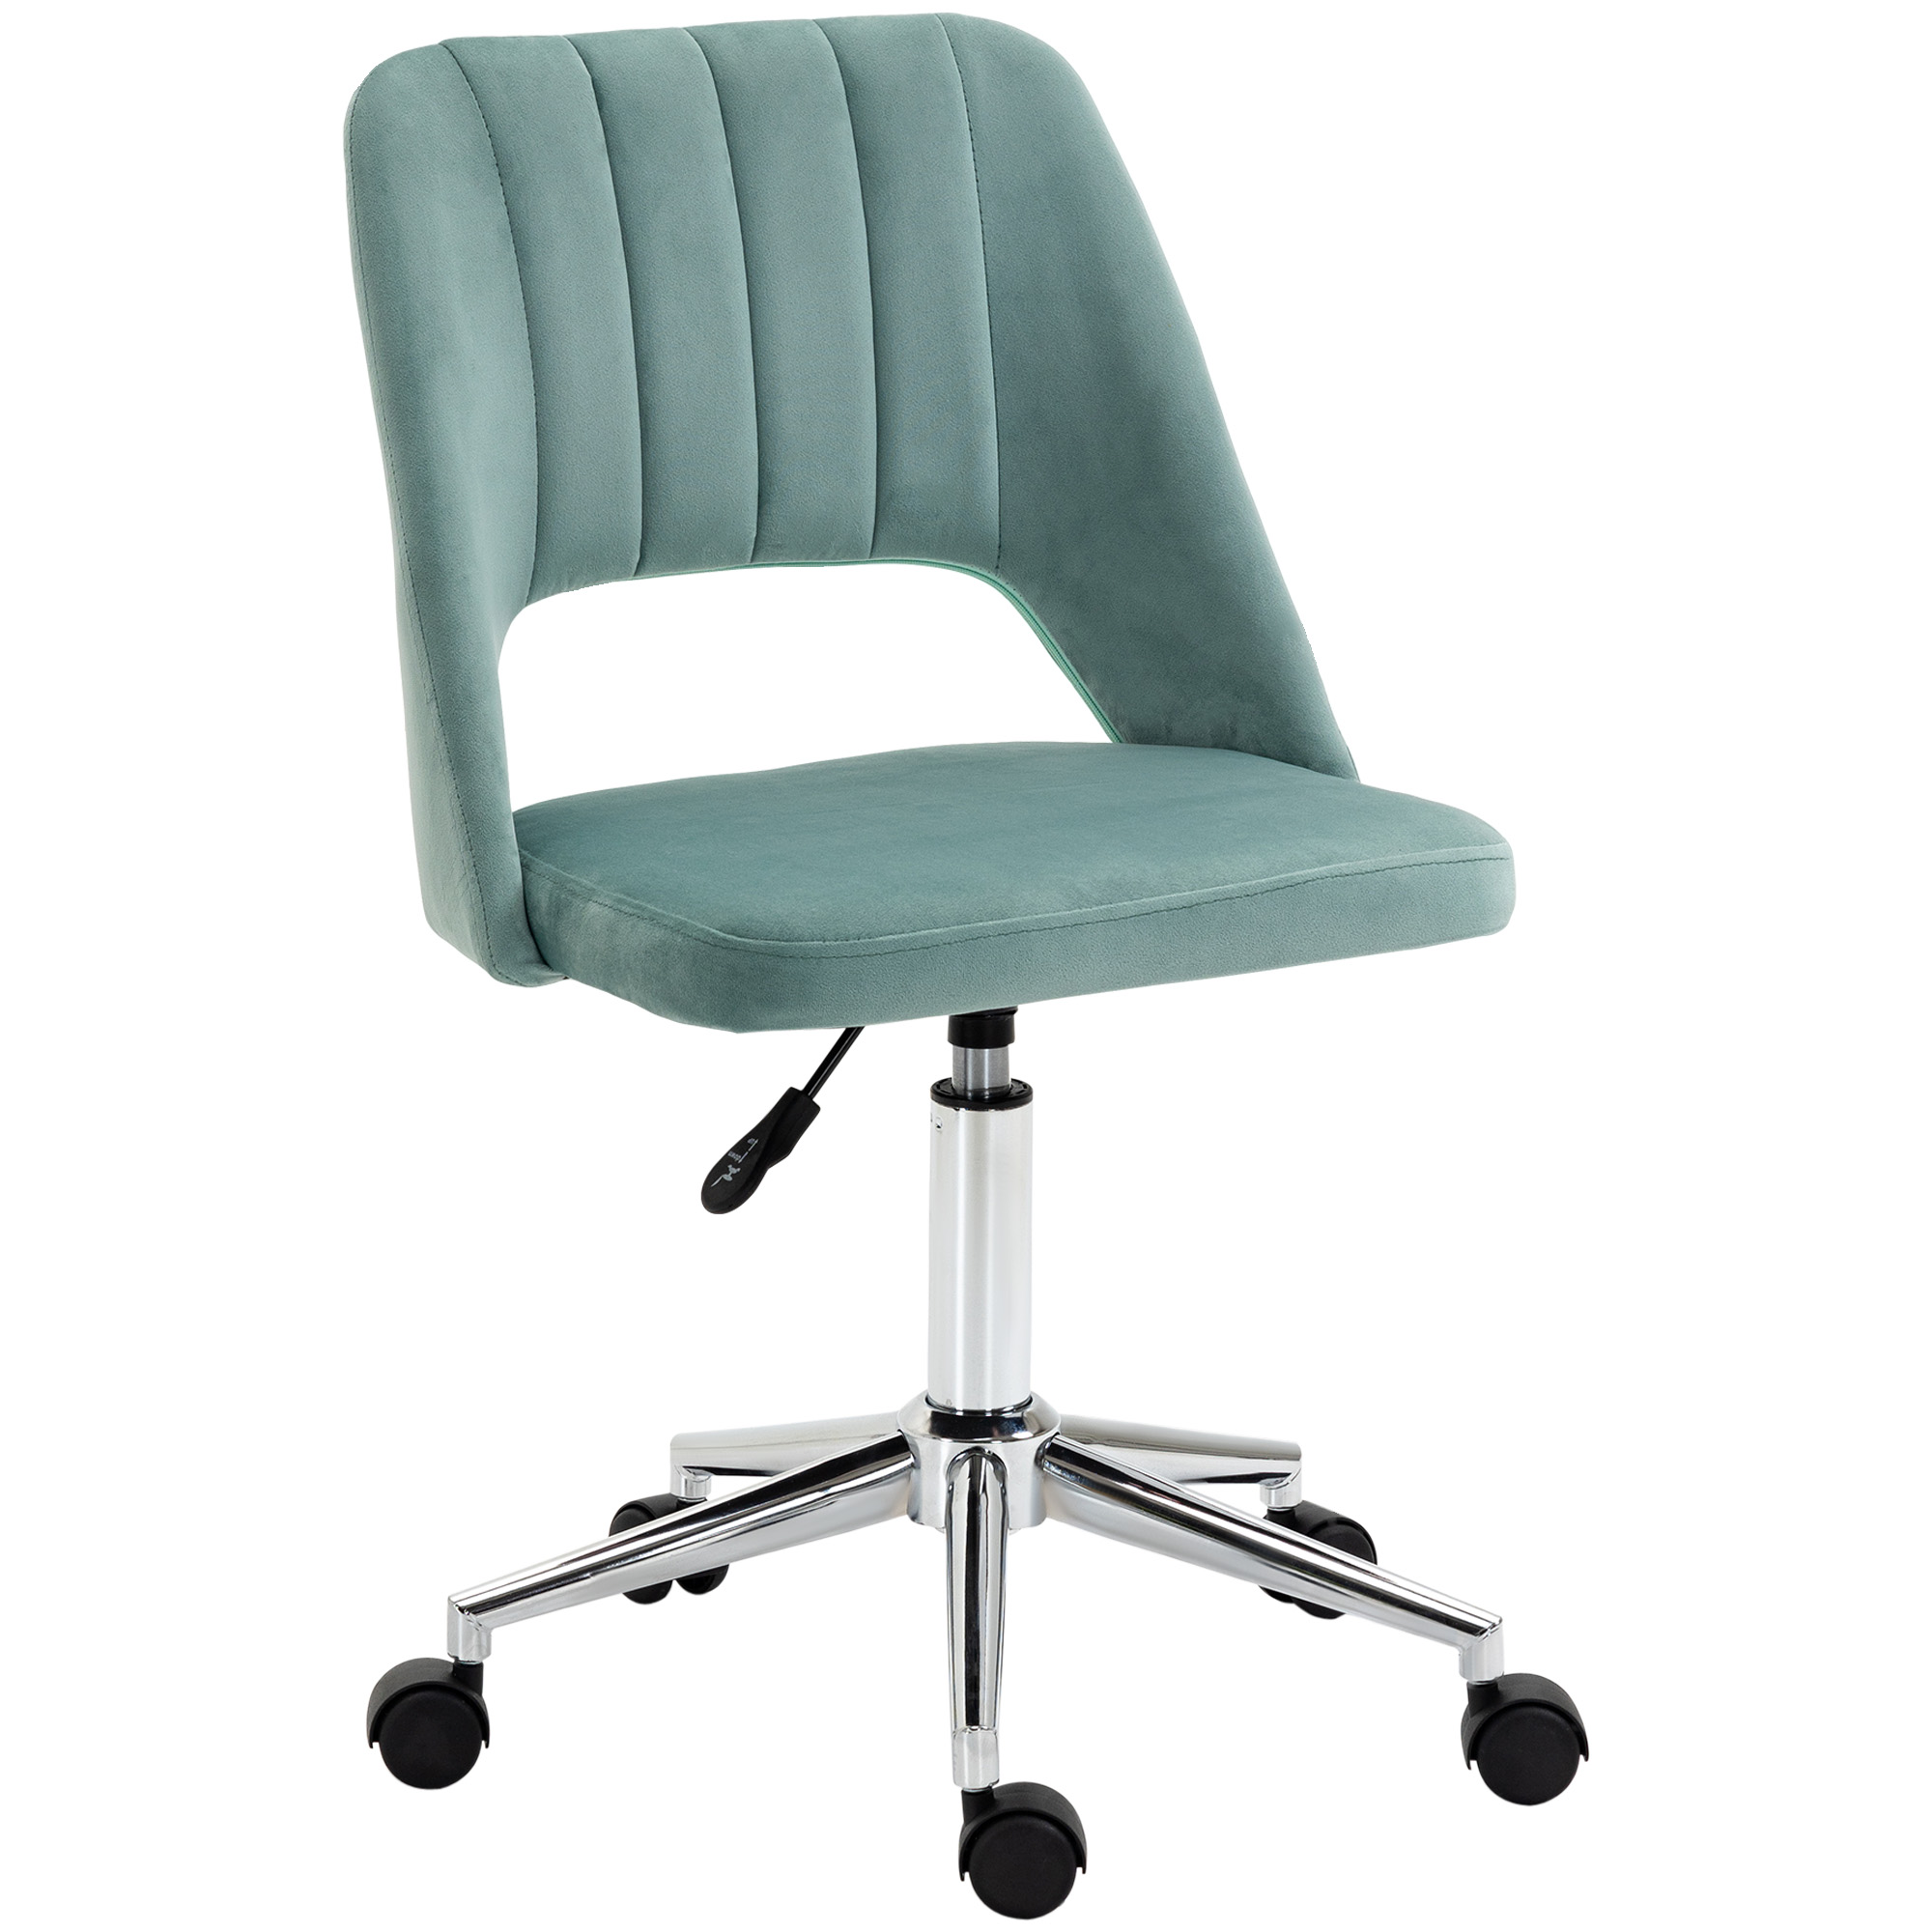 Εργονομική περιστρεφόμενη καρέκλα γραφείου Vinsetto με ταπετσαρία ρυθμιζόμενου ύψους - Πράσινη